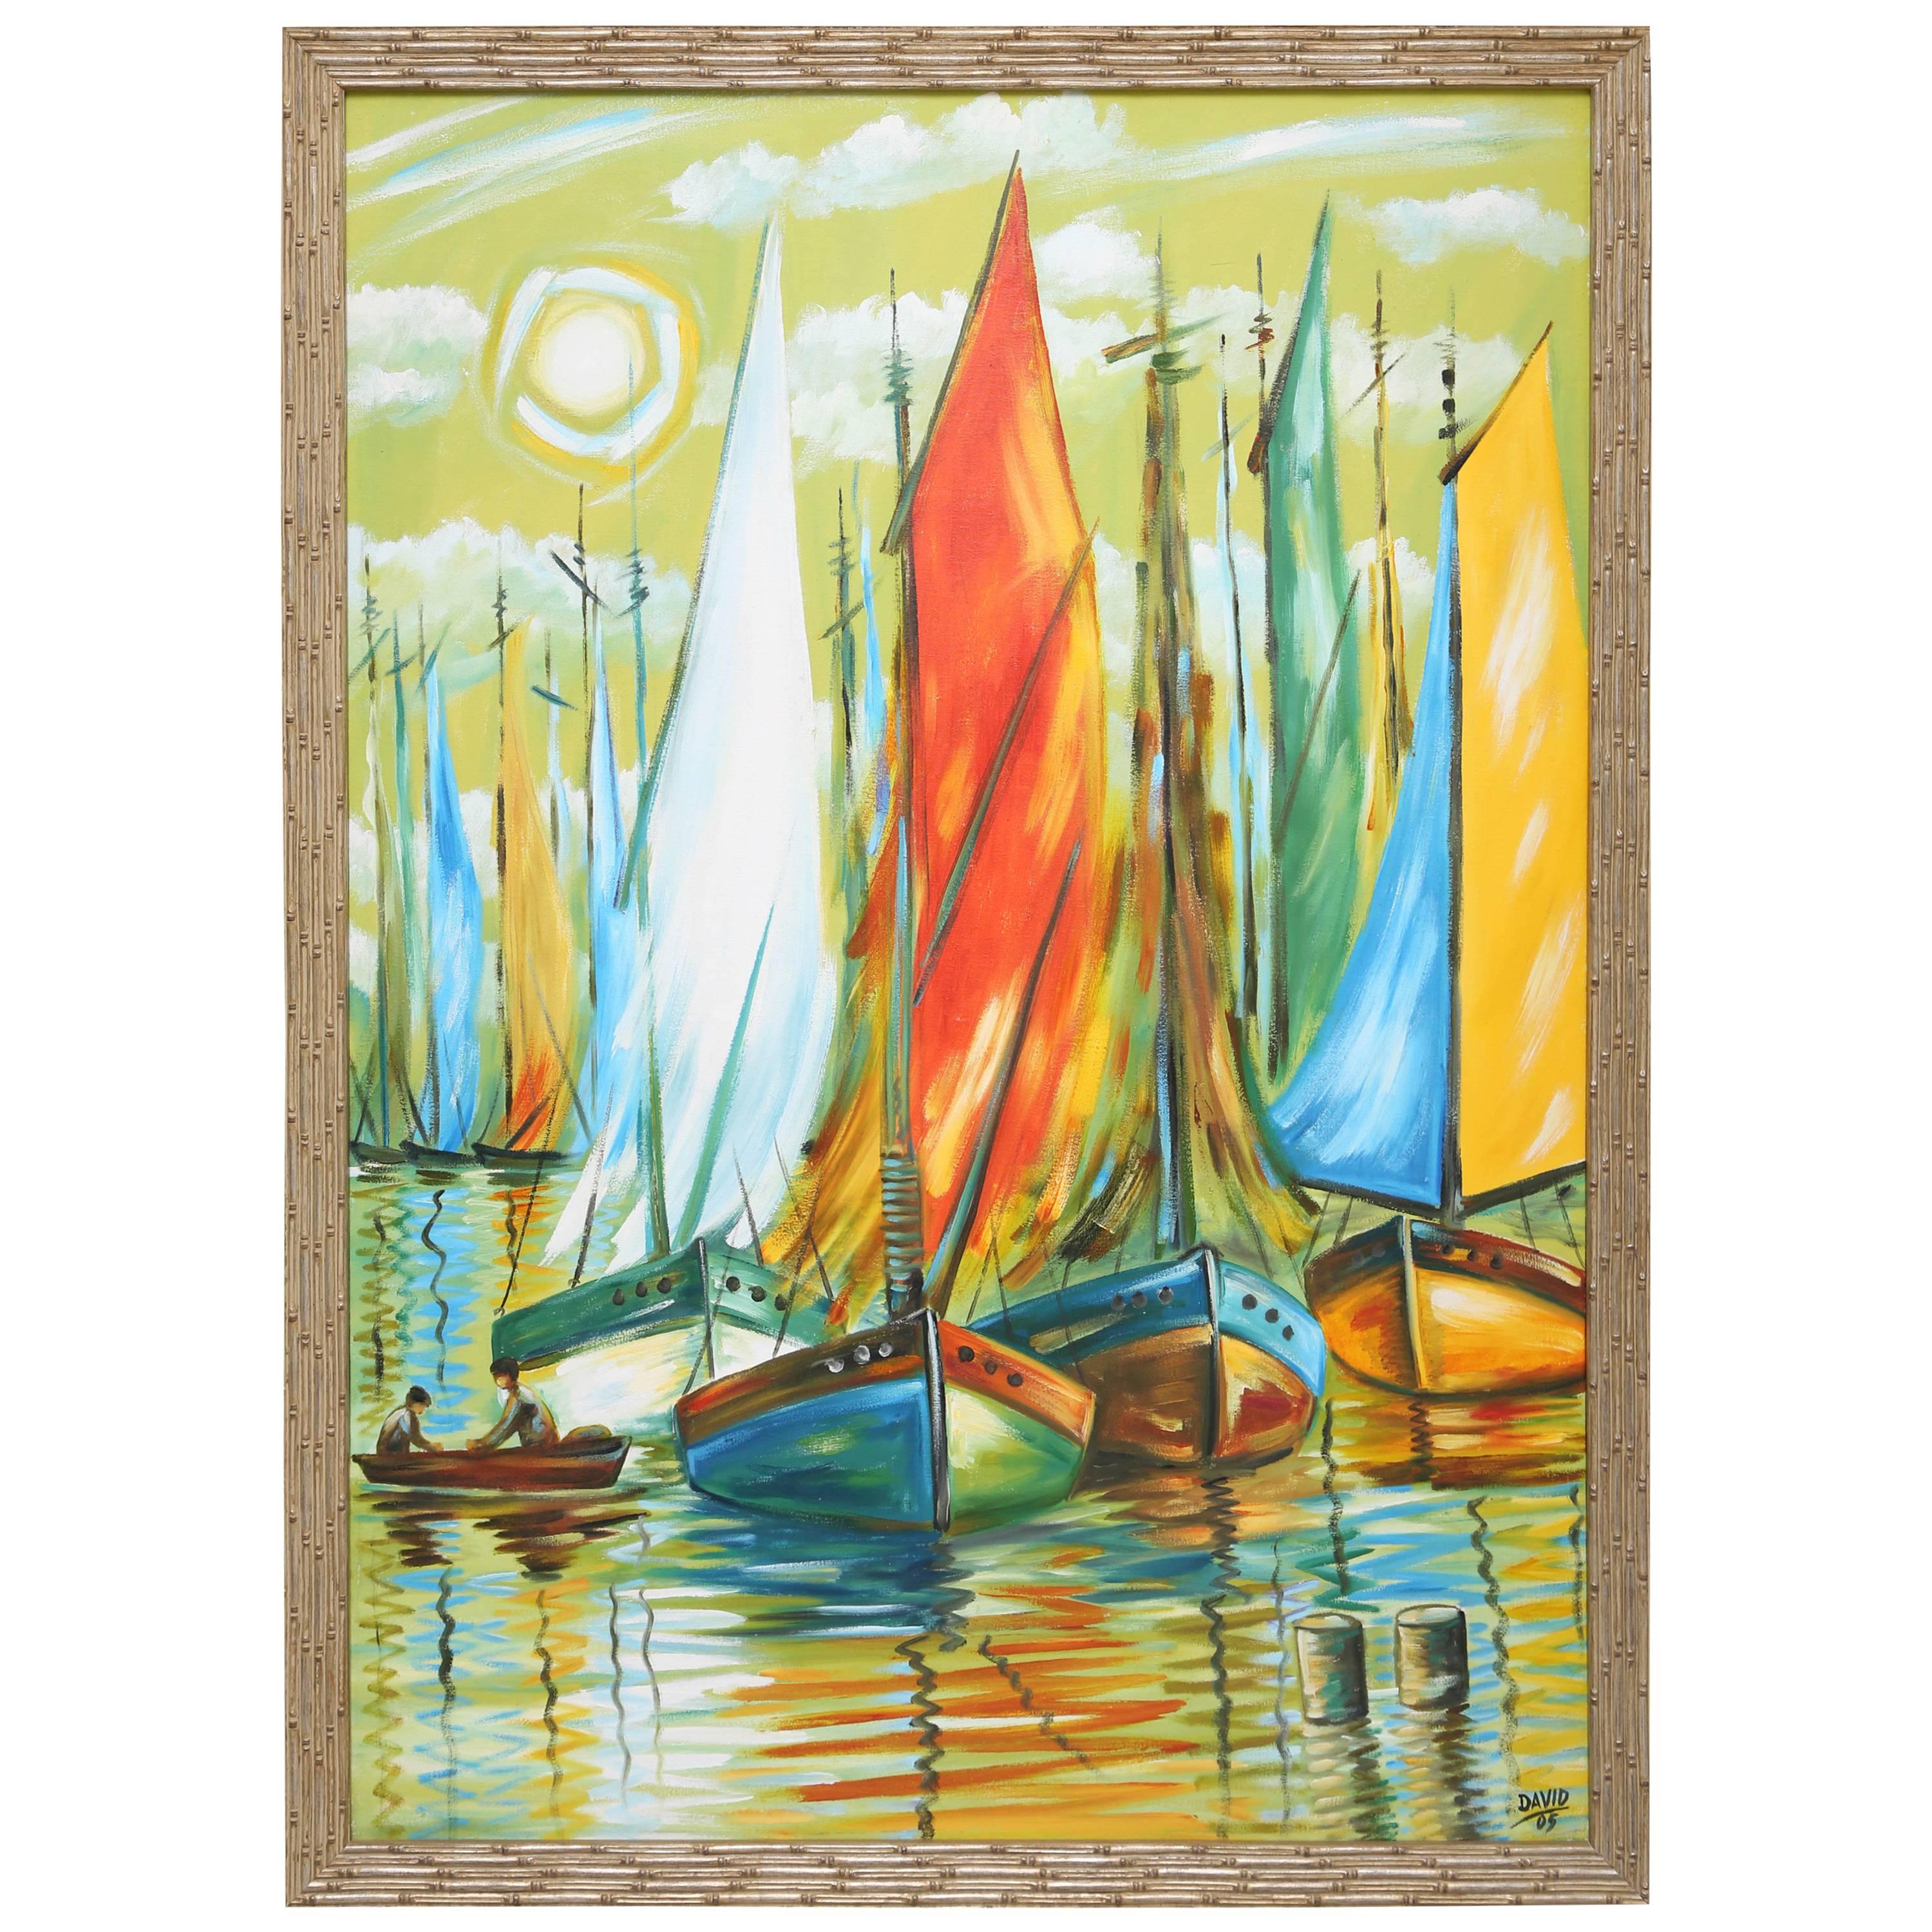 Original Nautical Oil Painting